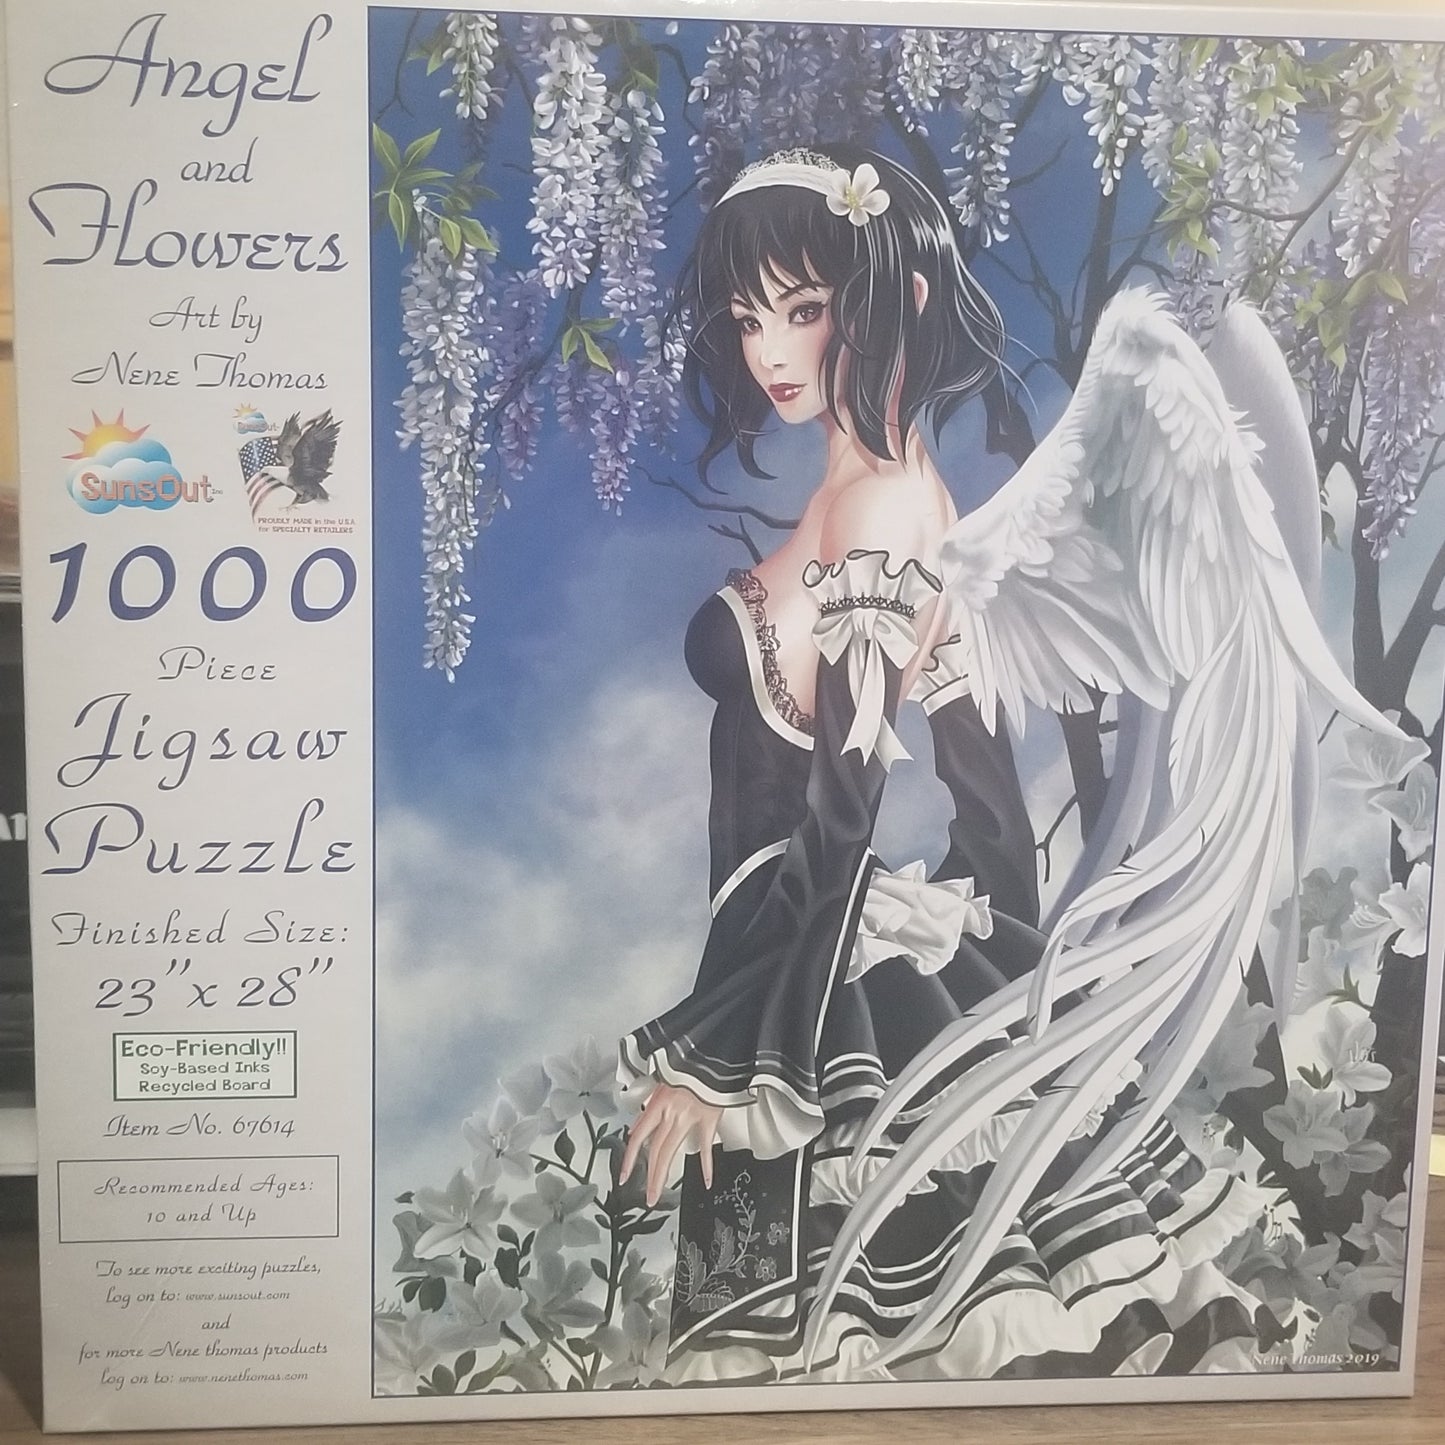 Engel en bloemen door Nene Thomas, puzzel van 1000 stukjes